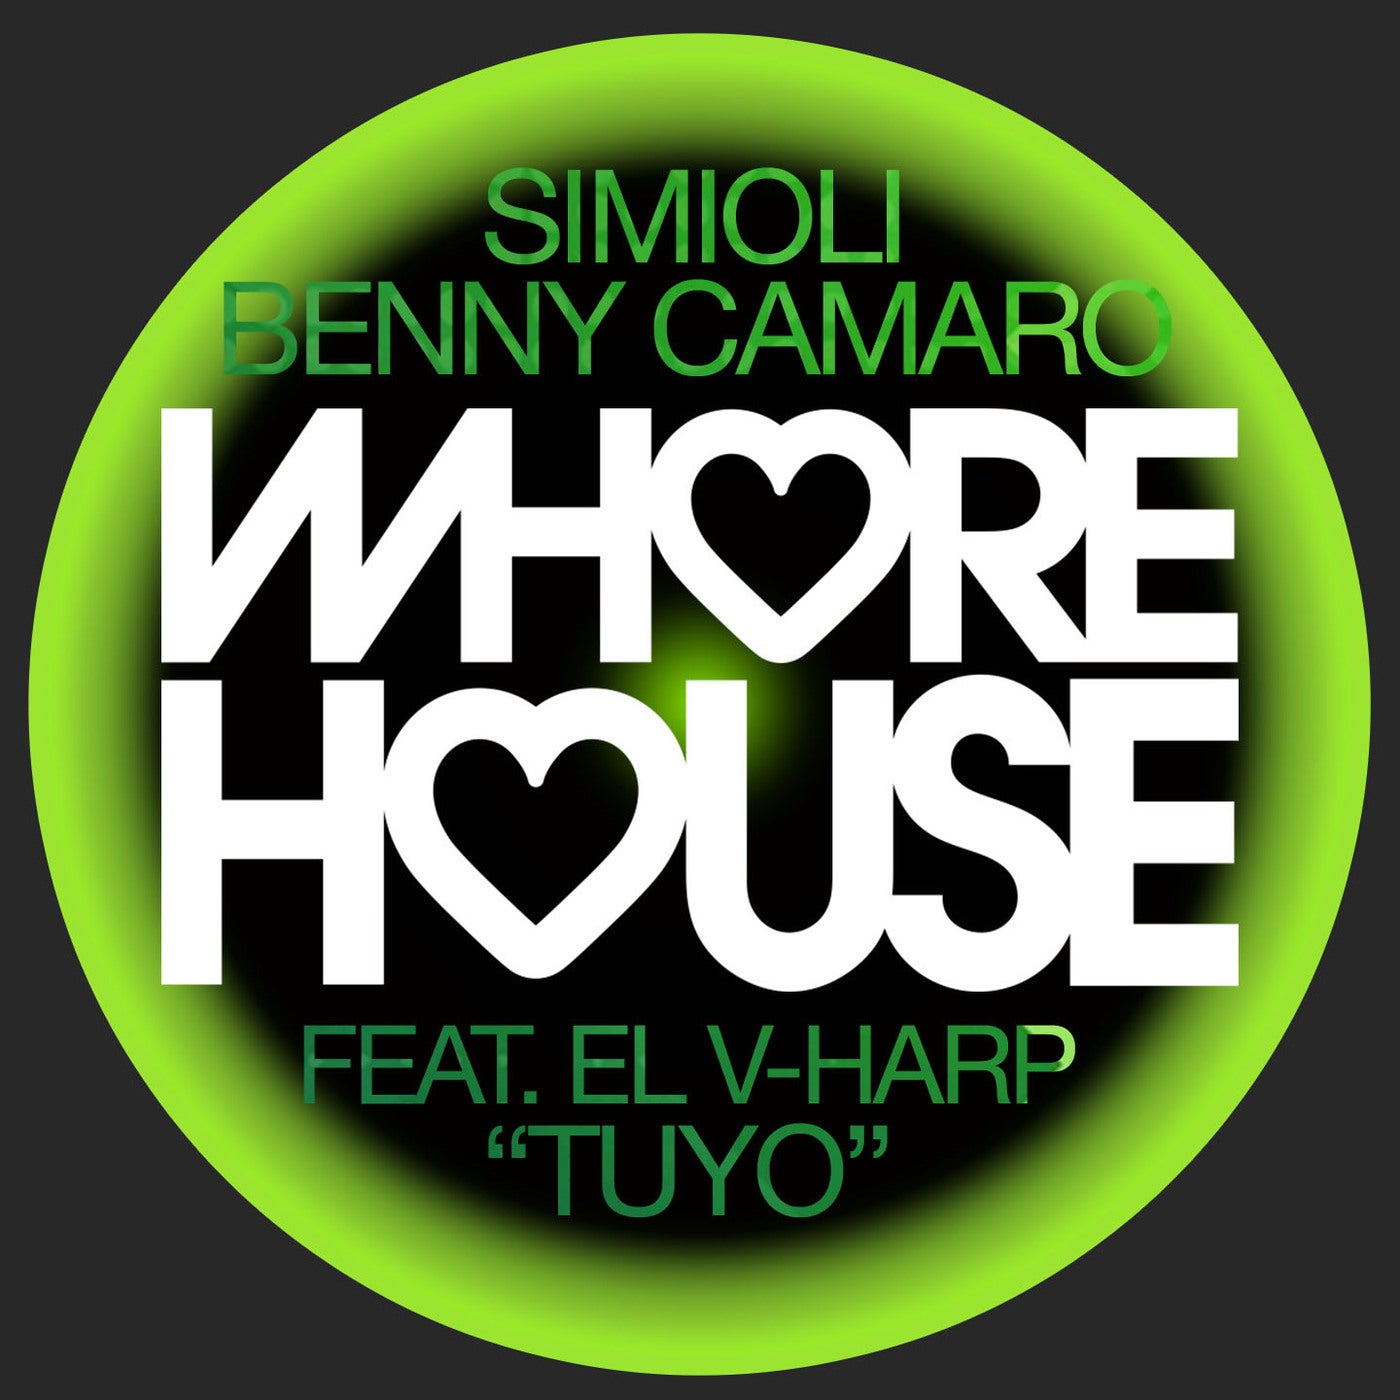 Simioli, Benny Camaro Feat. El V-Harp - Tuyo (Original Mix)